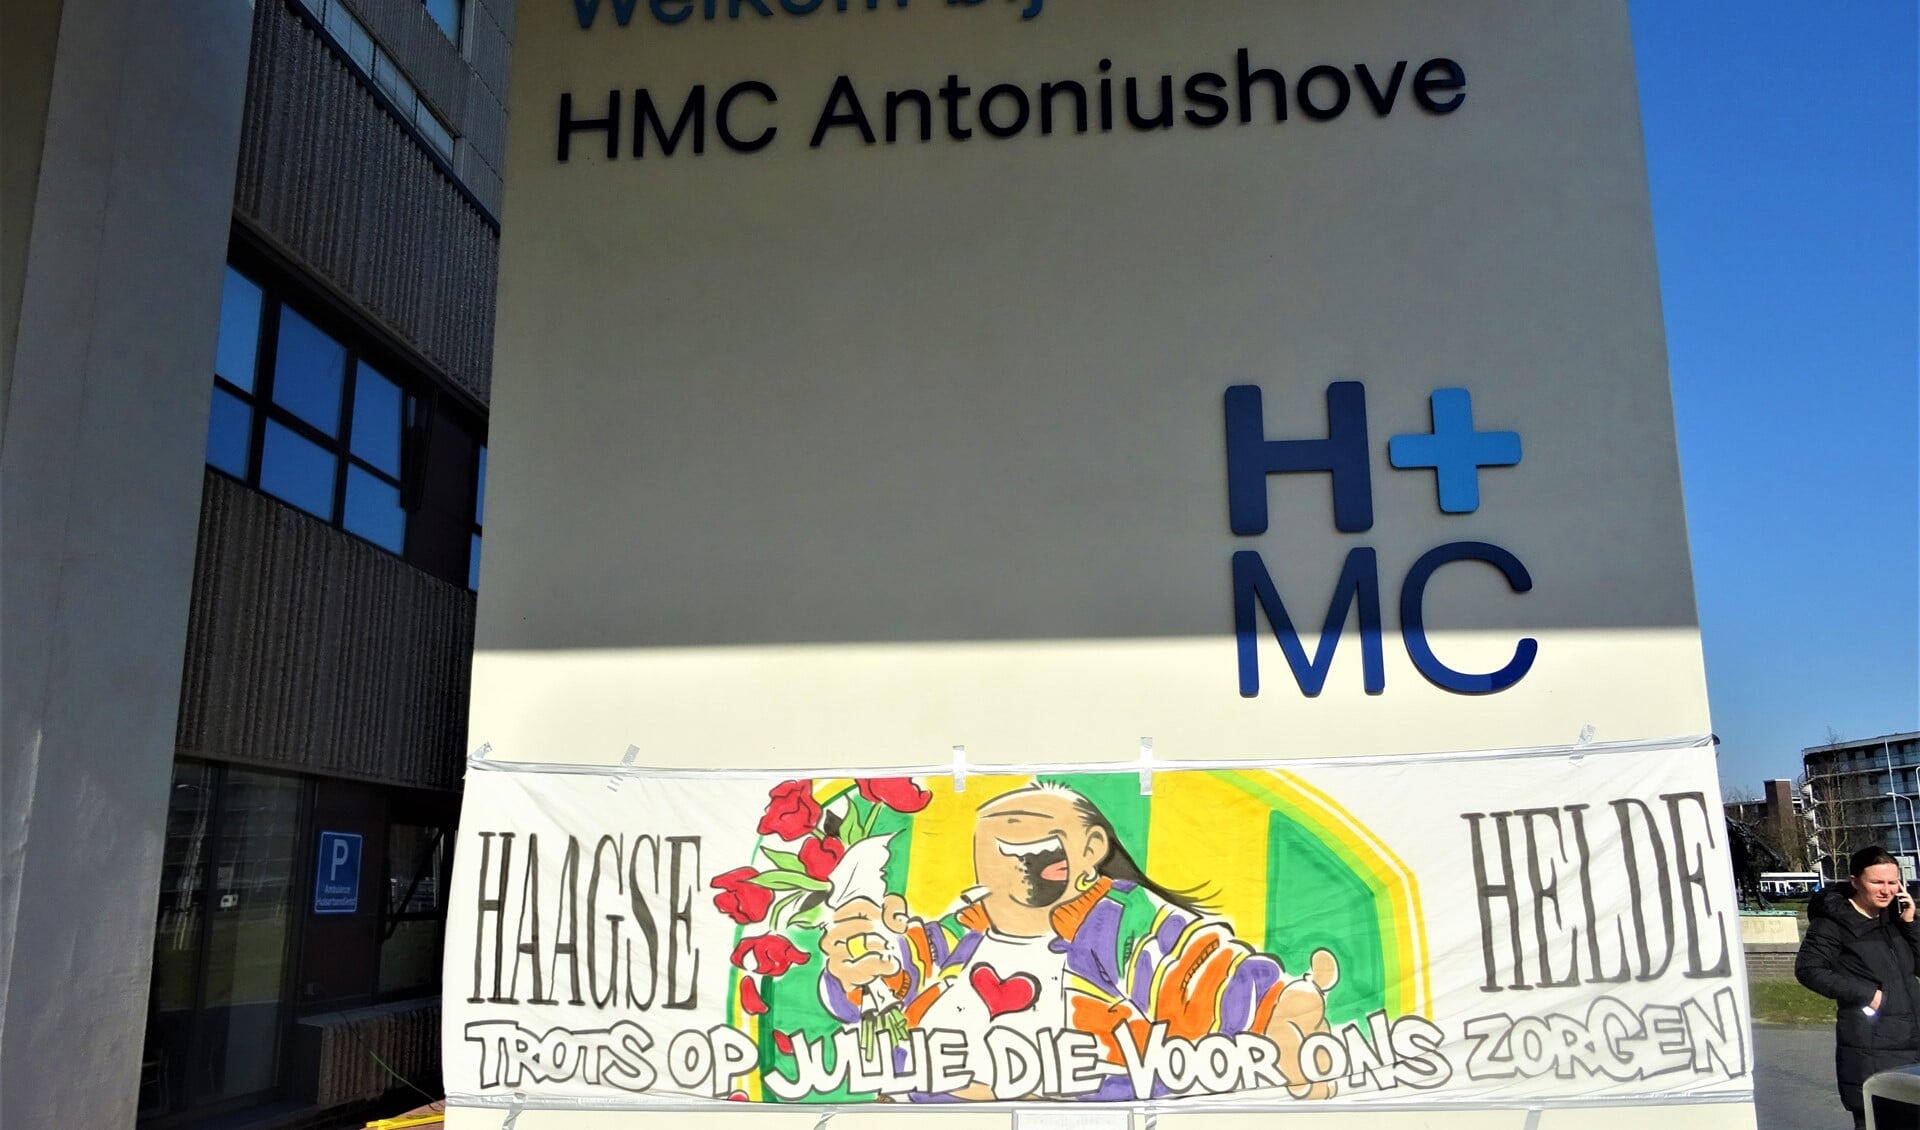 Spandoek van Haagse Harry bij ziekenhuis HMC Antoniuishove (foto: Ap de Heus).